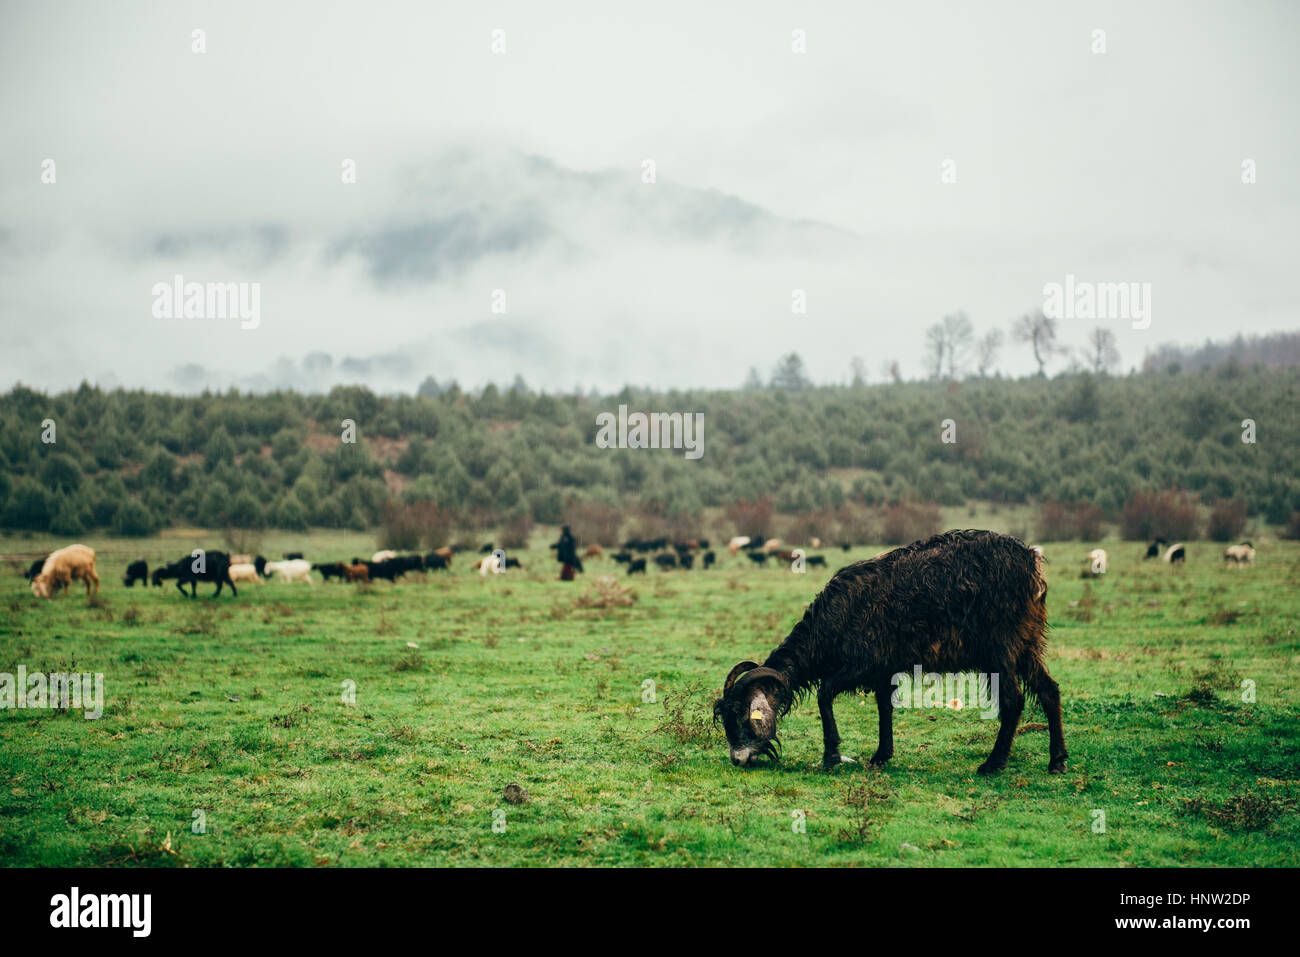 Ram grazing in green pasture Stock Photo